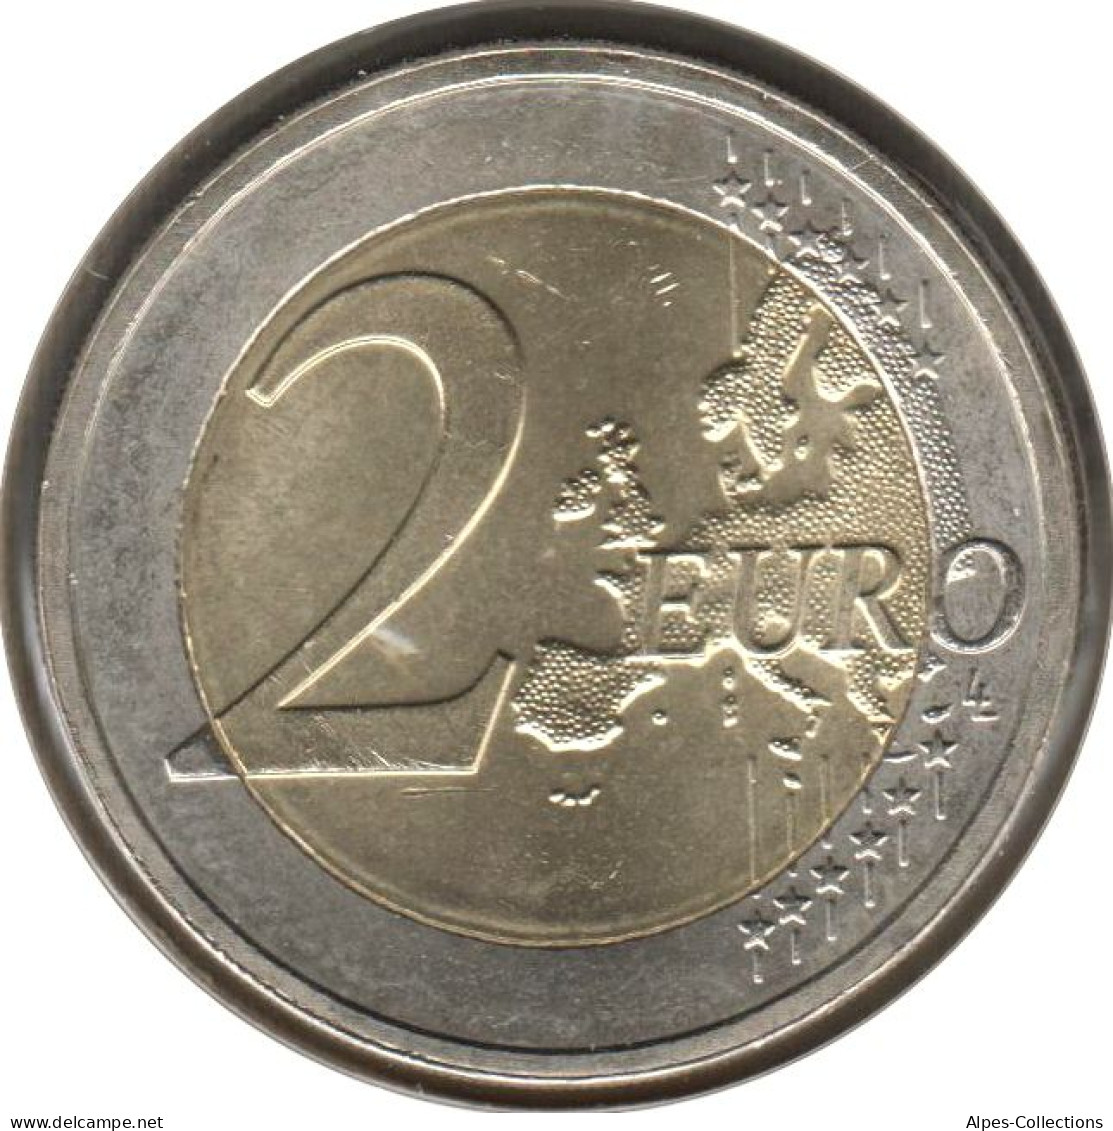 PB20012.1 - PAYS-BAS - 2 Euros Commémo. 10 Ans De L'euro - 2012 - Pays-Bas